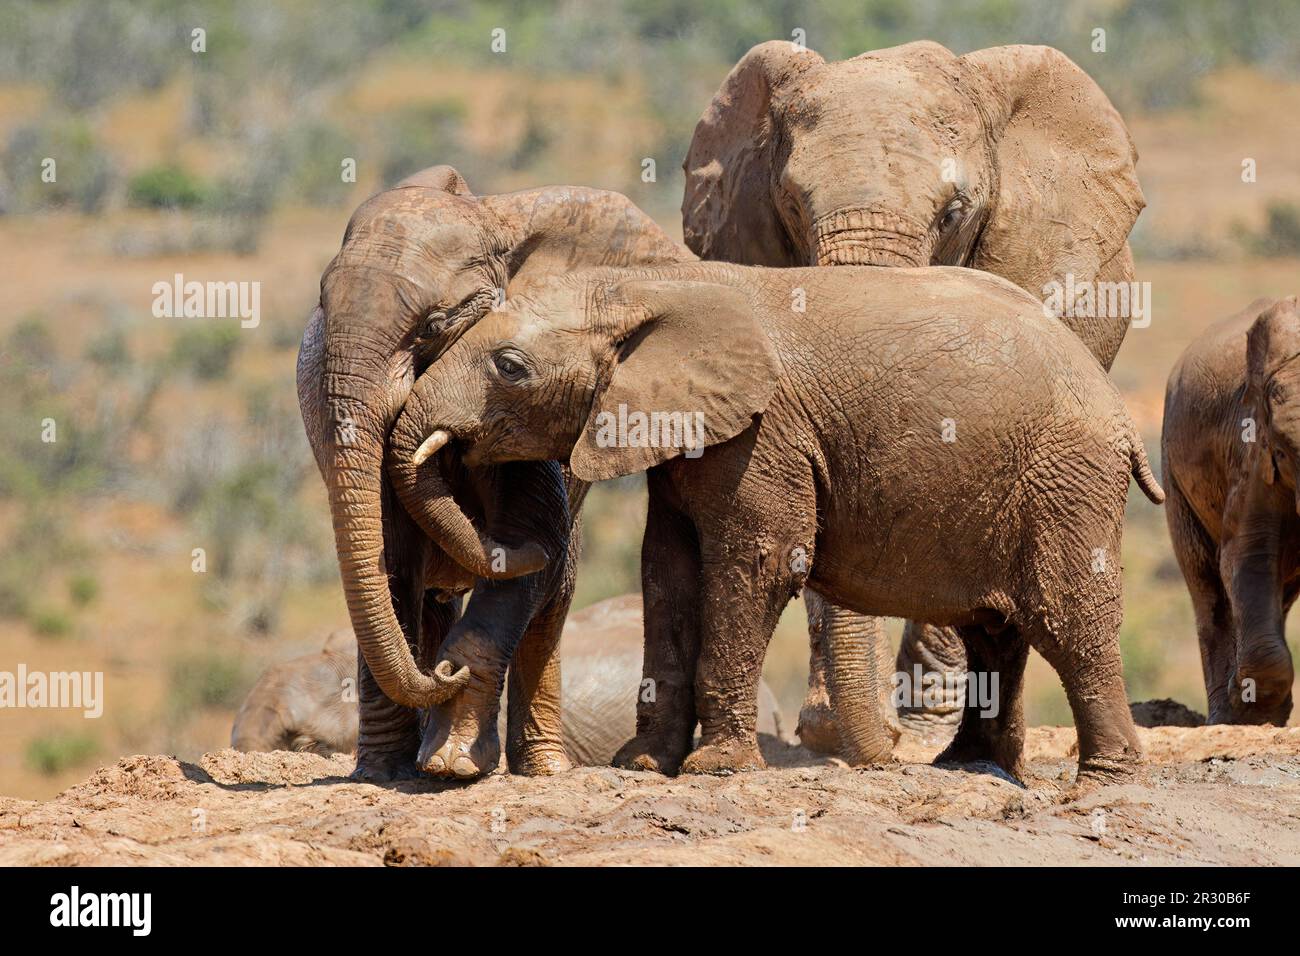 Jeunes éléphants africains (Loxodonta africana) jouant dans la boue, Parc national des éléphants d'Addo, Afrique du Sud Banque D'Images